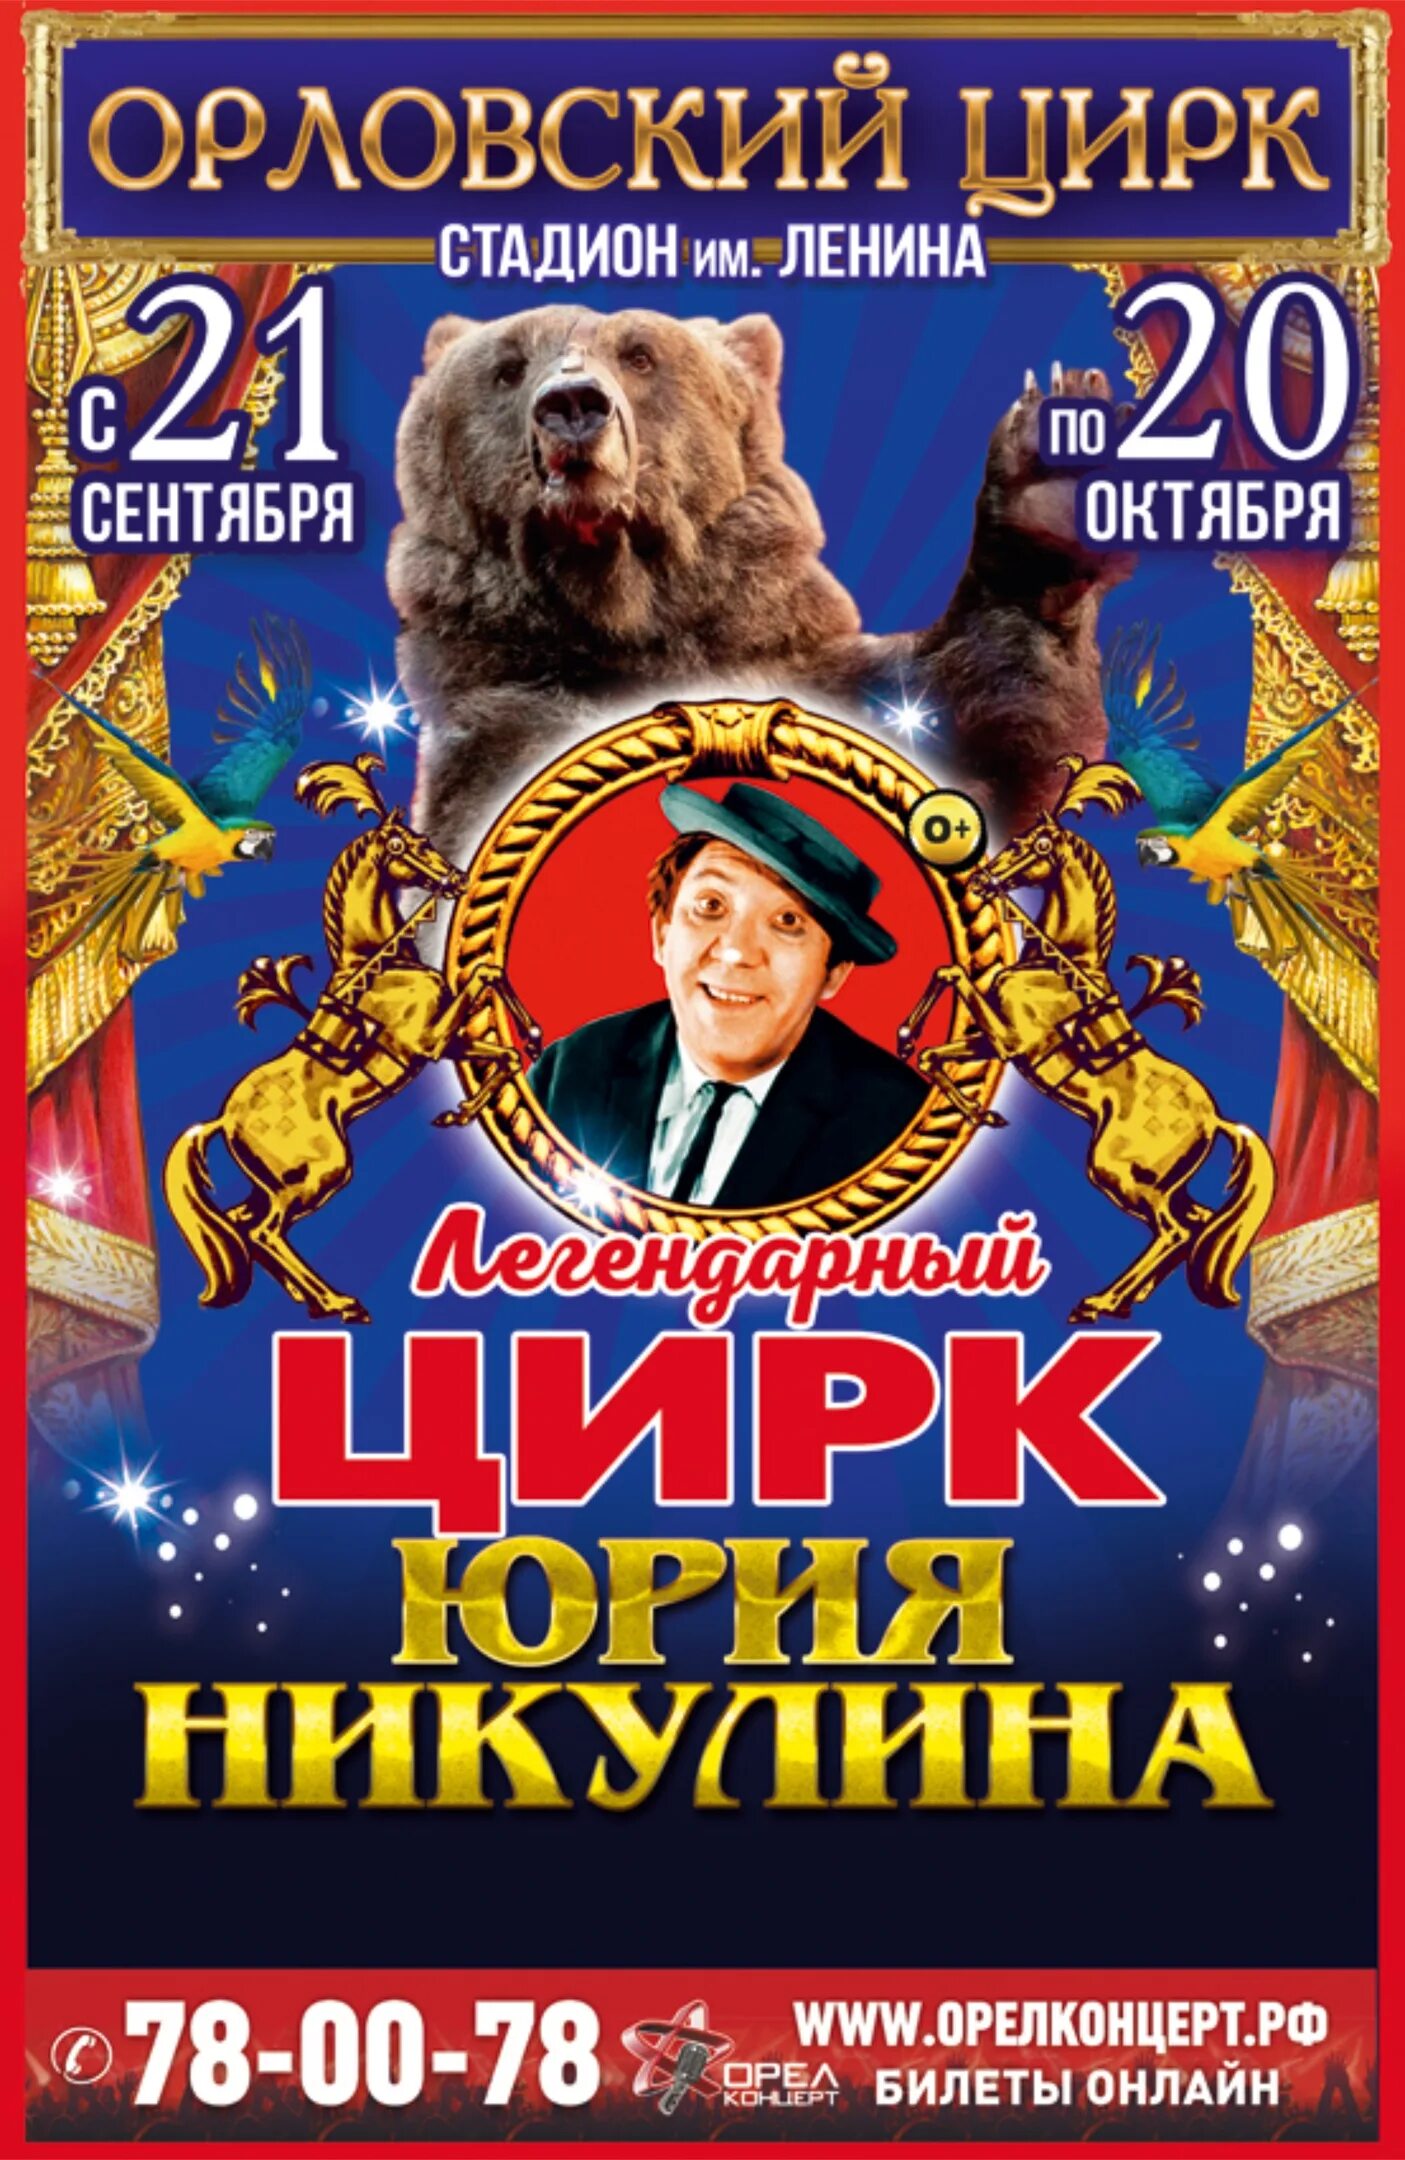 Легендарный цирк Юрия Никулина. Билет в цирк. Орловский цирк. Цирк в Орле. Бесплатные билеты в цирк